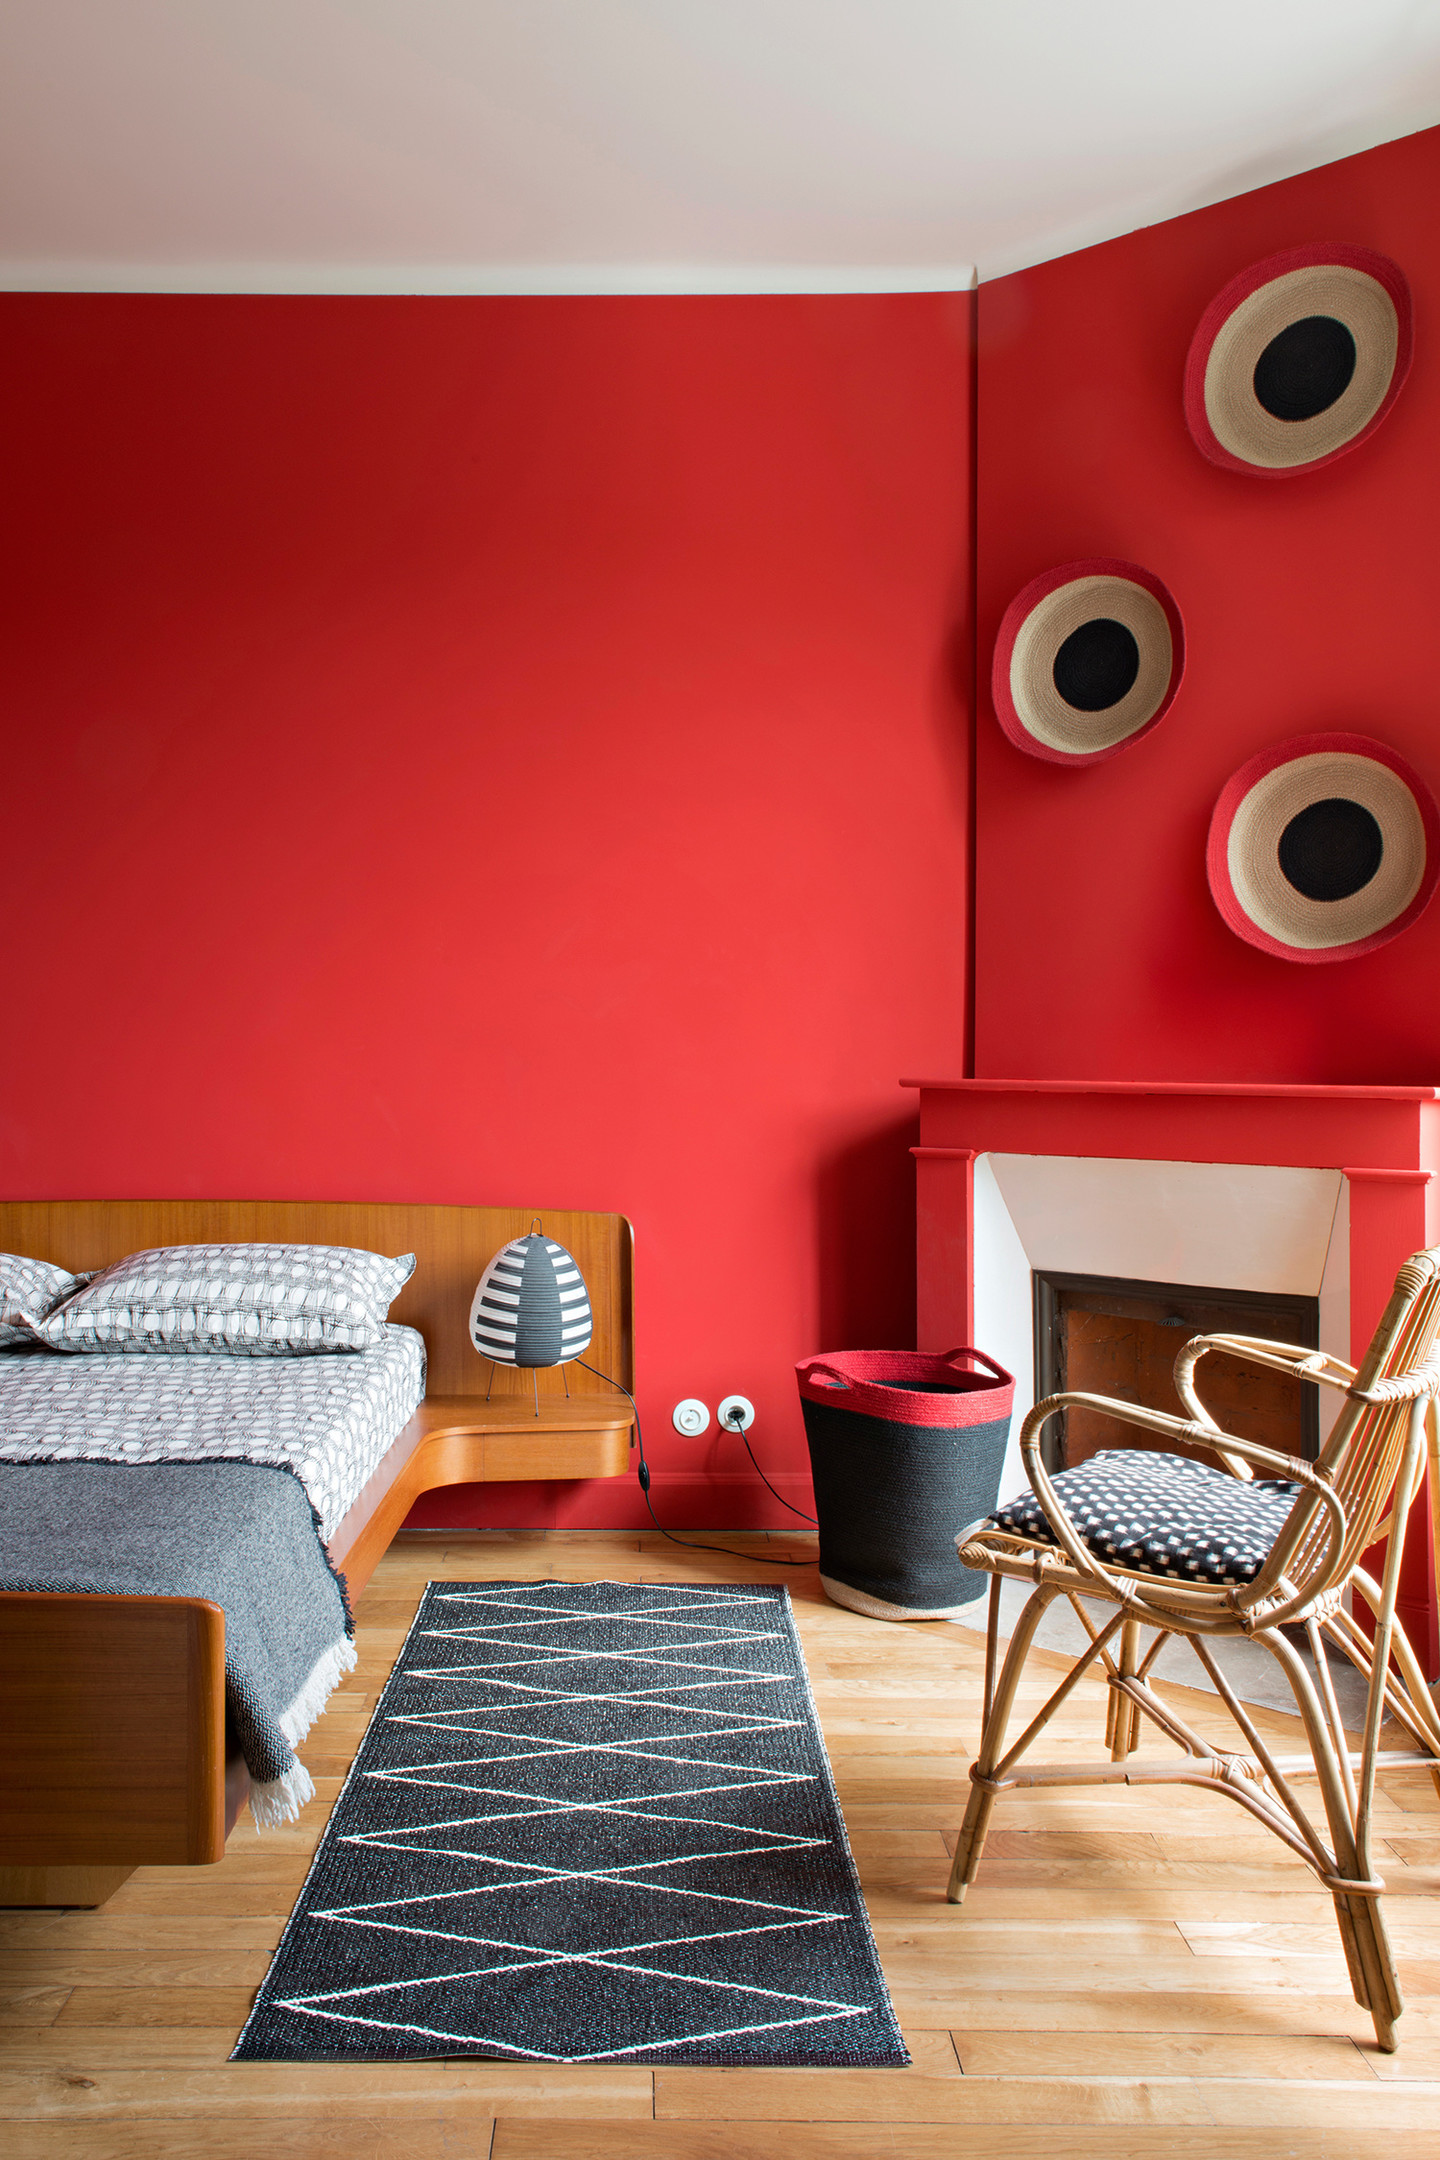 Dự án của nhà thiết kế Veronica Isker gây ấn tượng với người nhìn không chỉ nhờ màu tường sơn đỏ nổi bật mà còn ở chiếc giường gỗ thấp sàn nối liền với phần táp đầu giường một cách gọn gàng cho phòng ngủ thêm tiện ích.